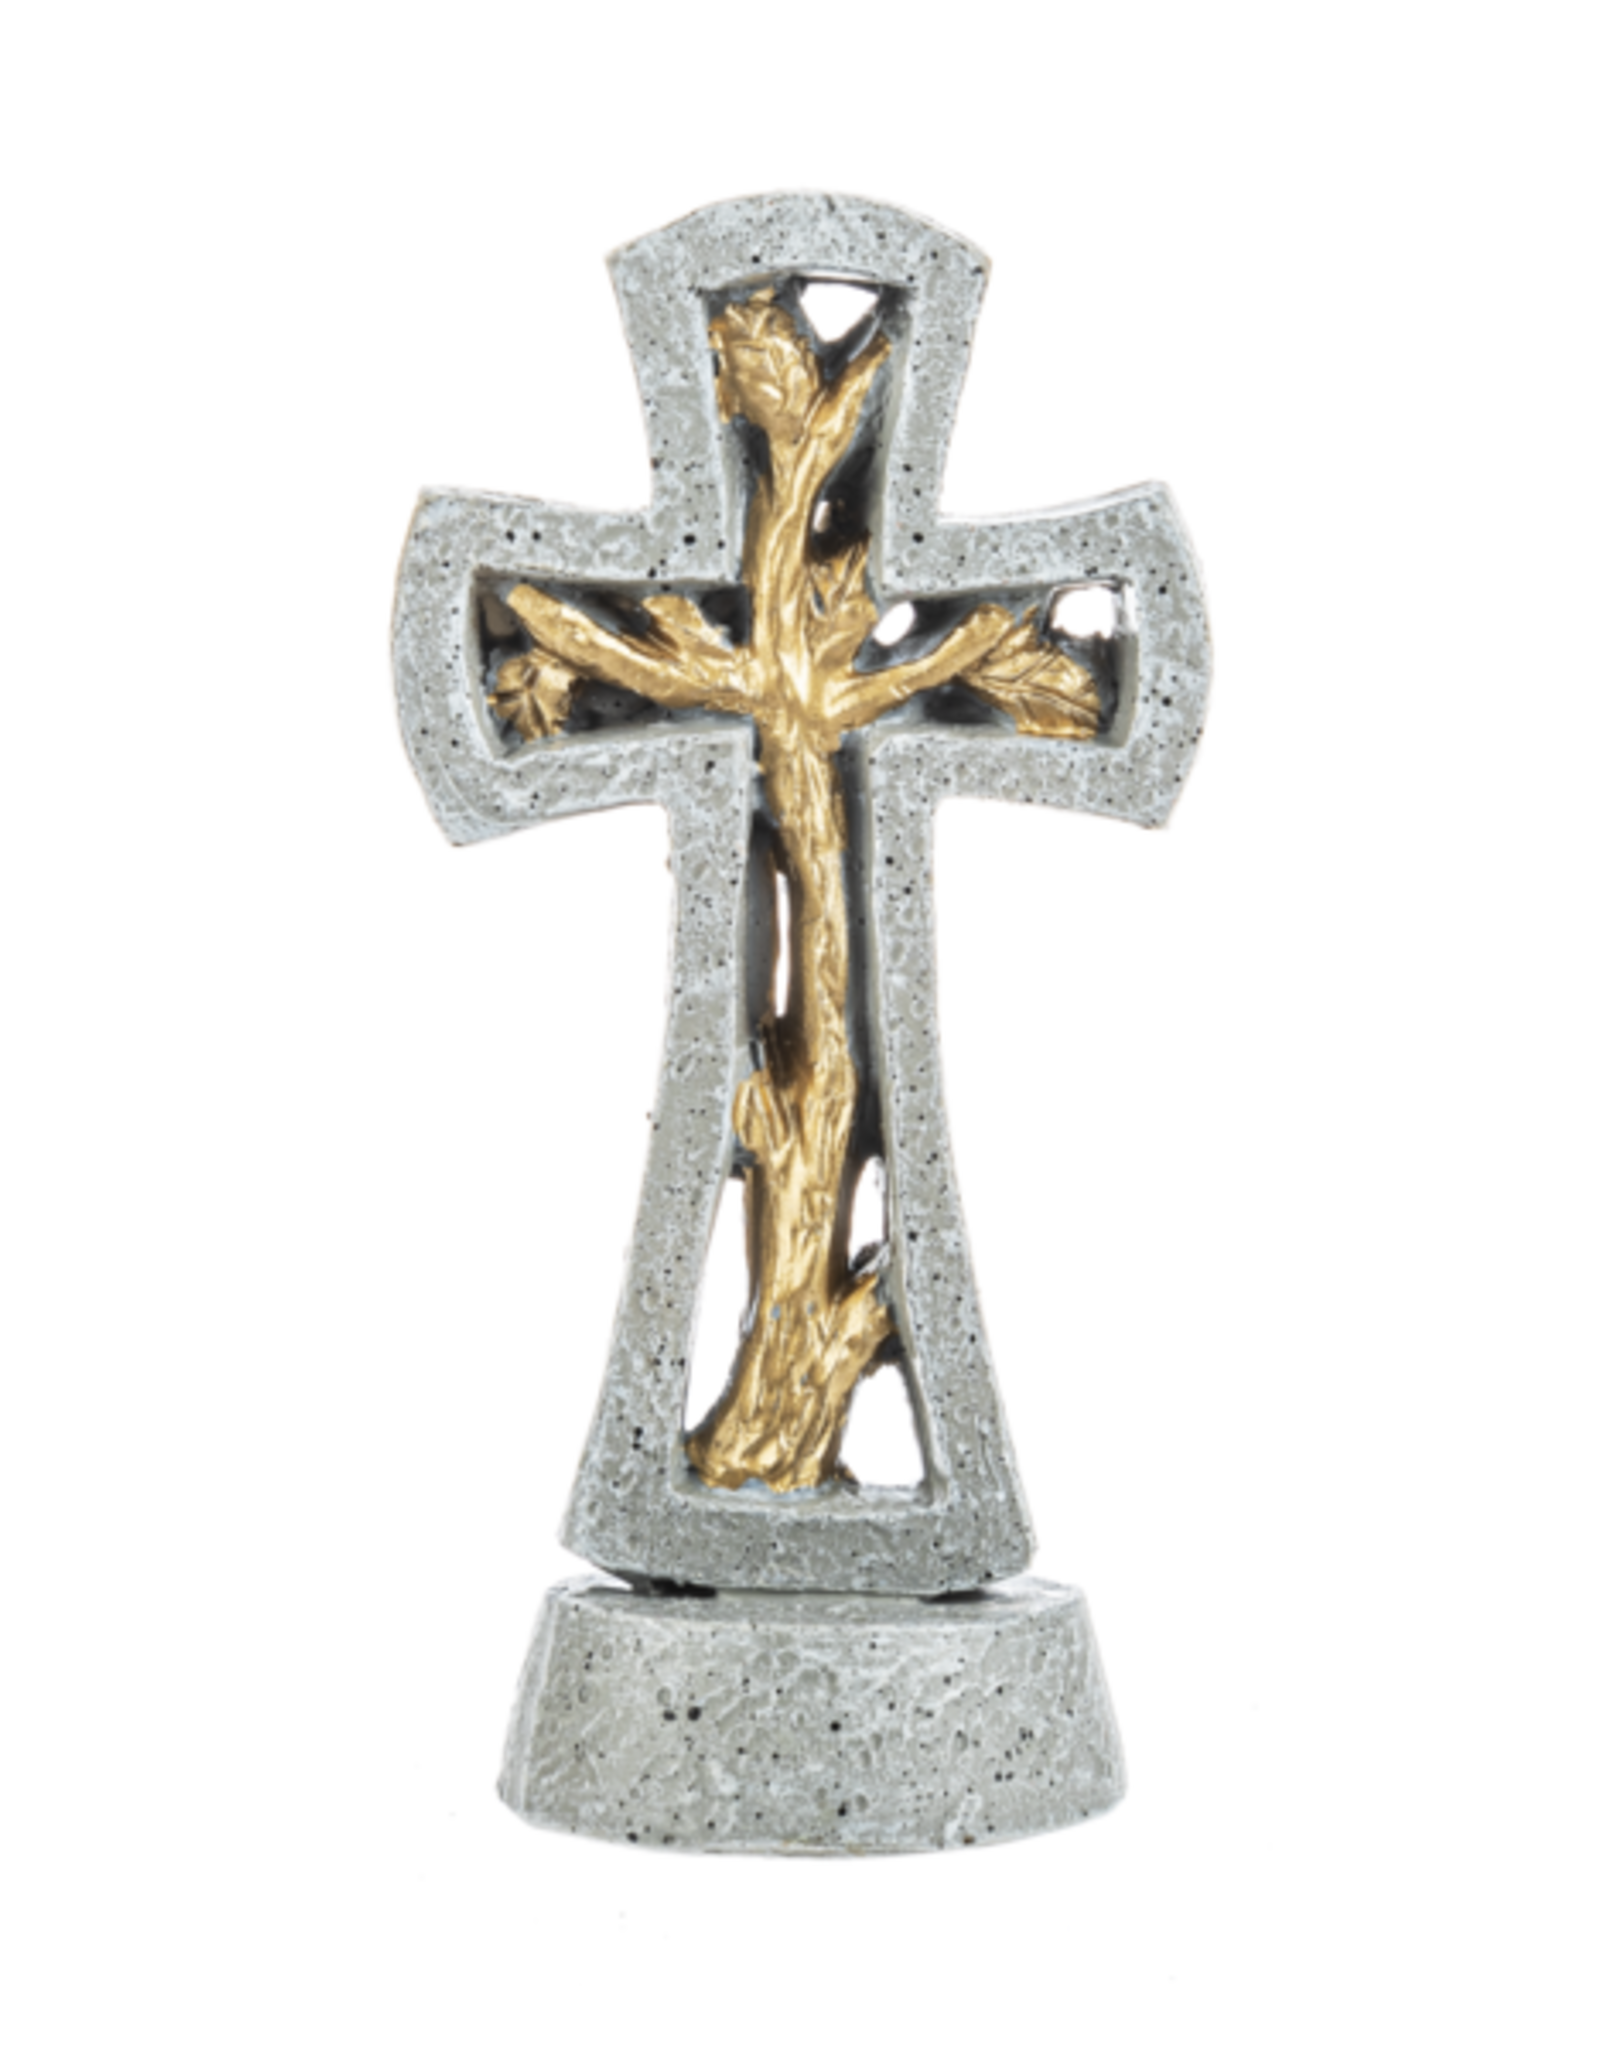 Ganz Cross of Faith Figurines (Various)